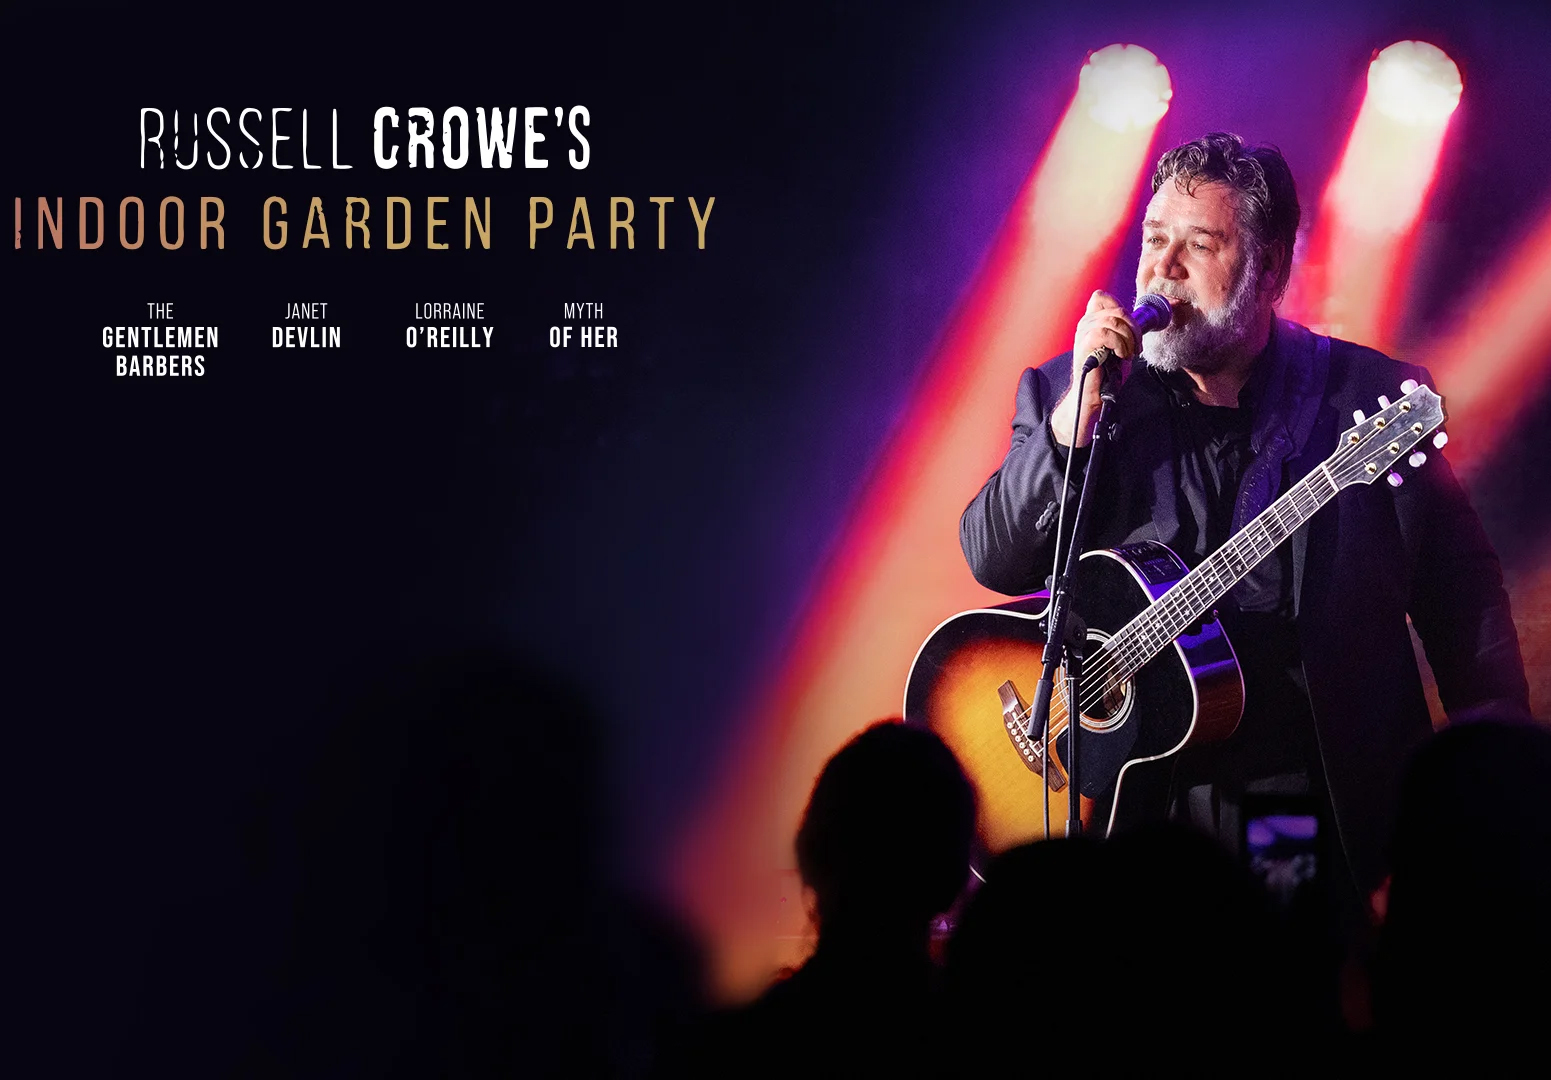 Russell Crowe's Indoor Garden Party